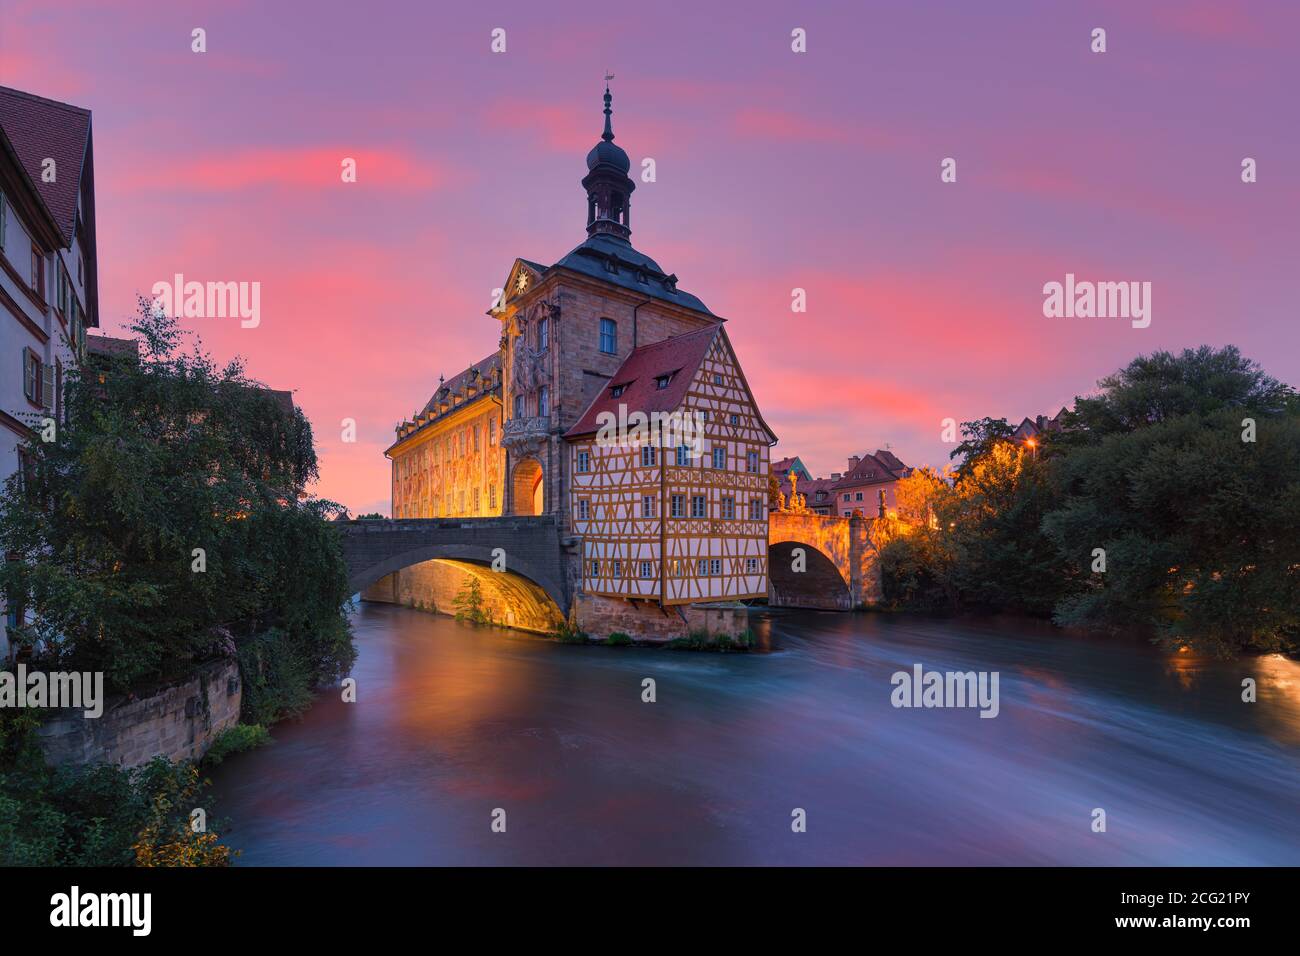 Sonnenuntergang im Alten Rathaus in Bamberg, Bayern, Deutschland. Bamberg ist eine Stadt in Oberfranken, an der Regnitz in der Nähe ihrer conf Stockfoto